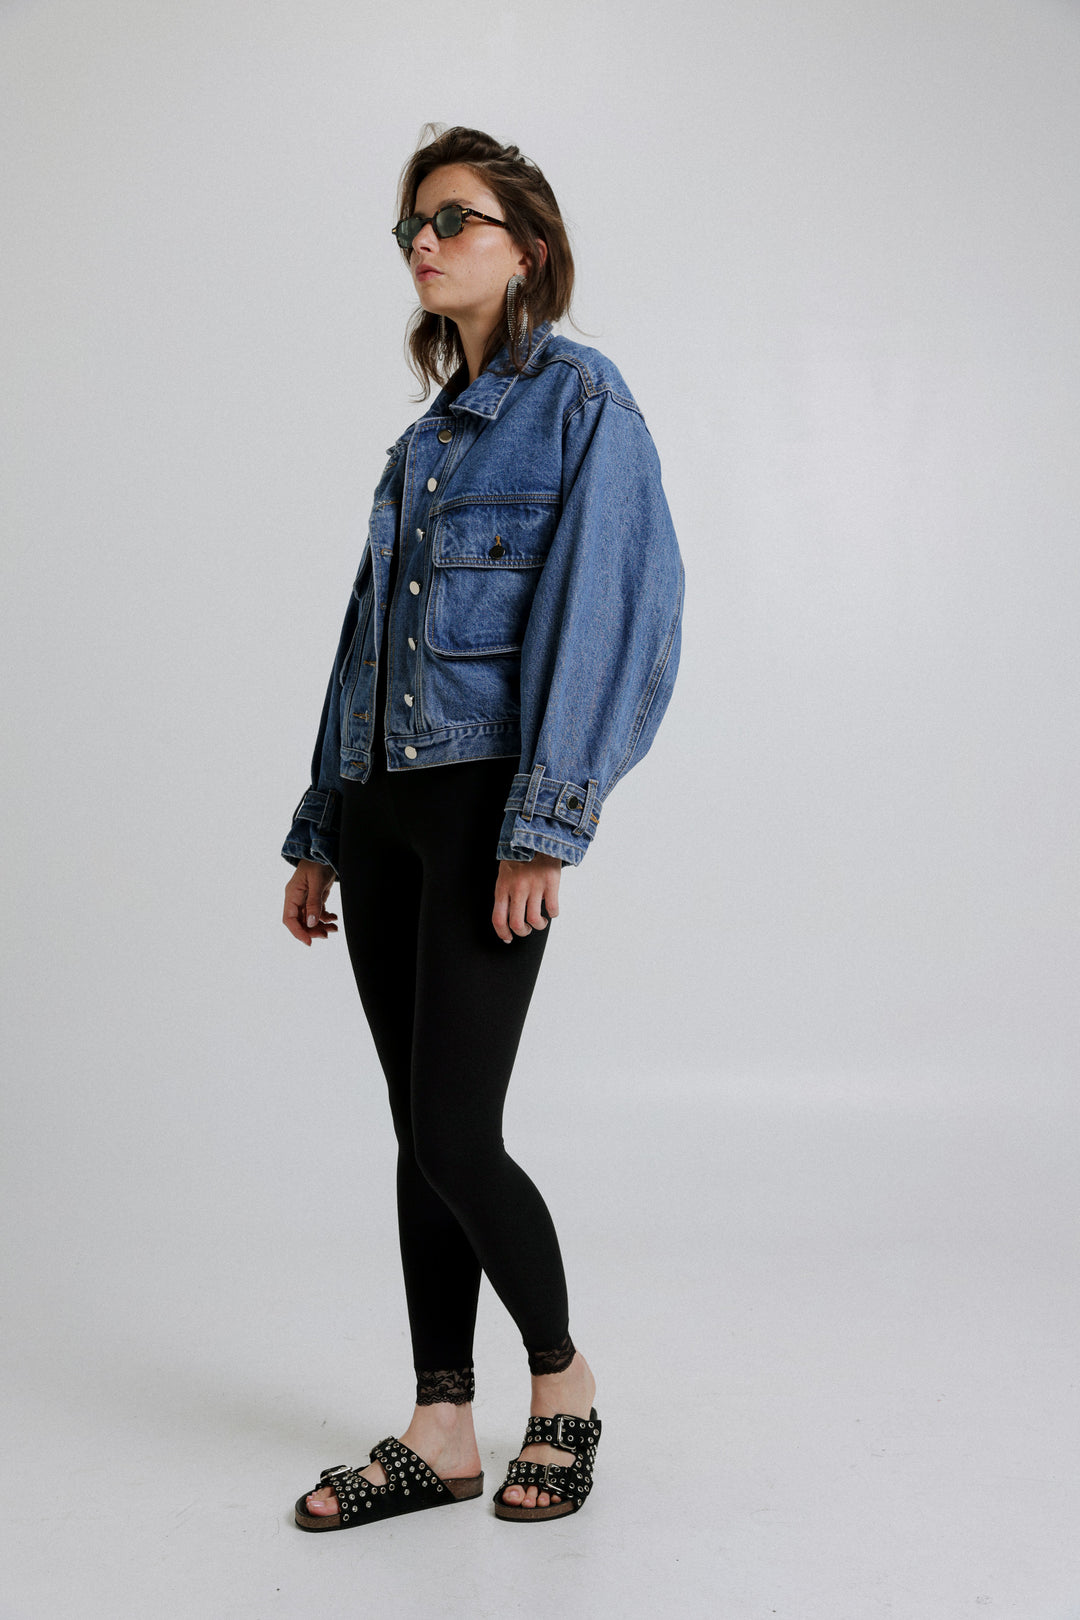 ז'קט ג'ינס לנשים דגם Autumn Denim Jacket עיצוב אלגנטי מושלם לסתיו 